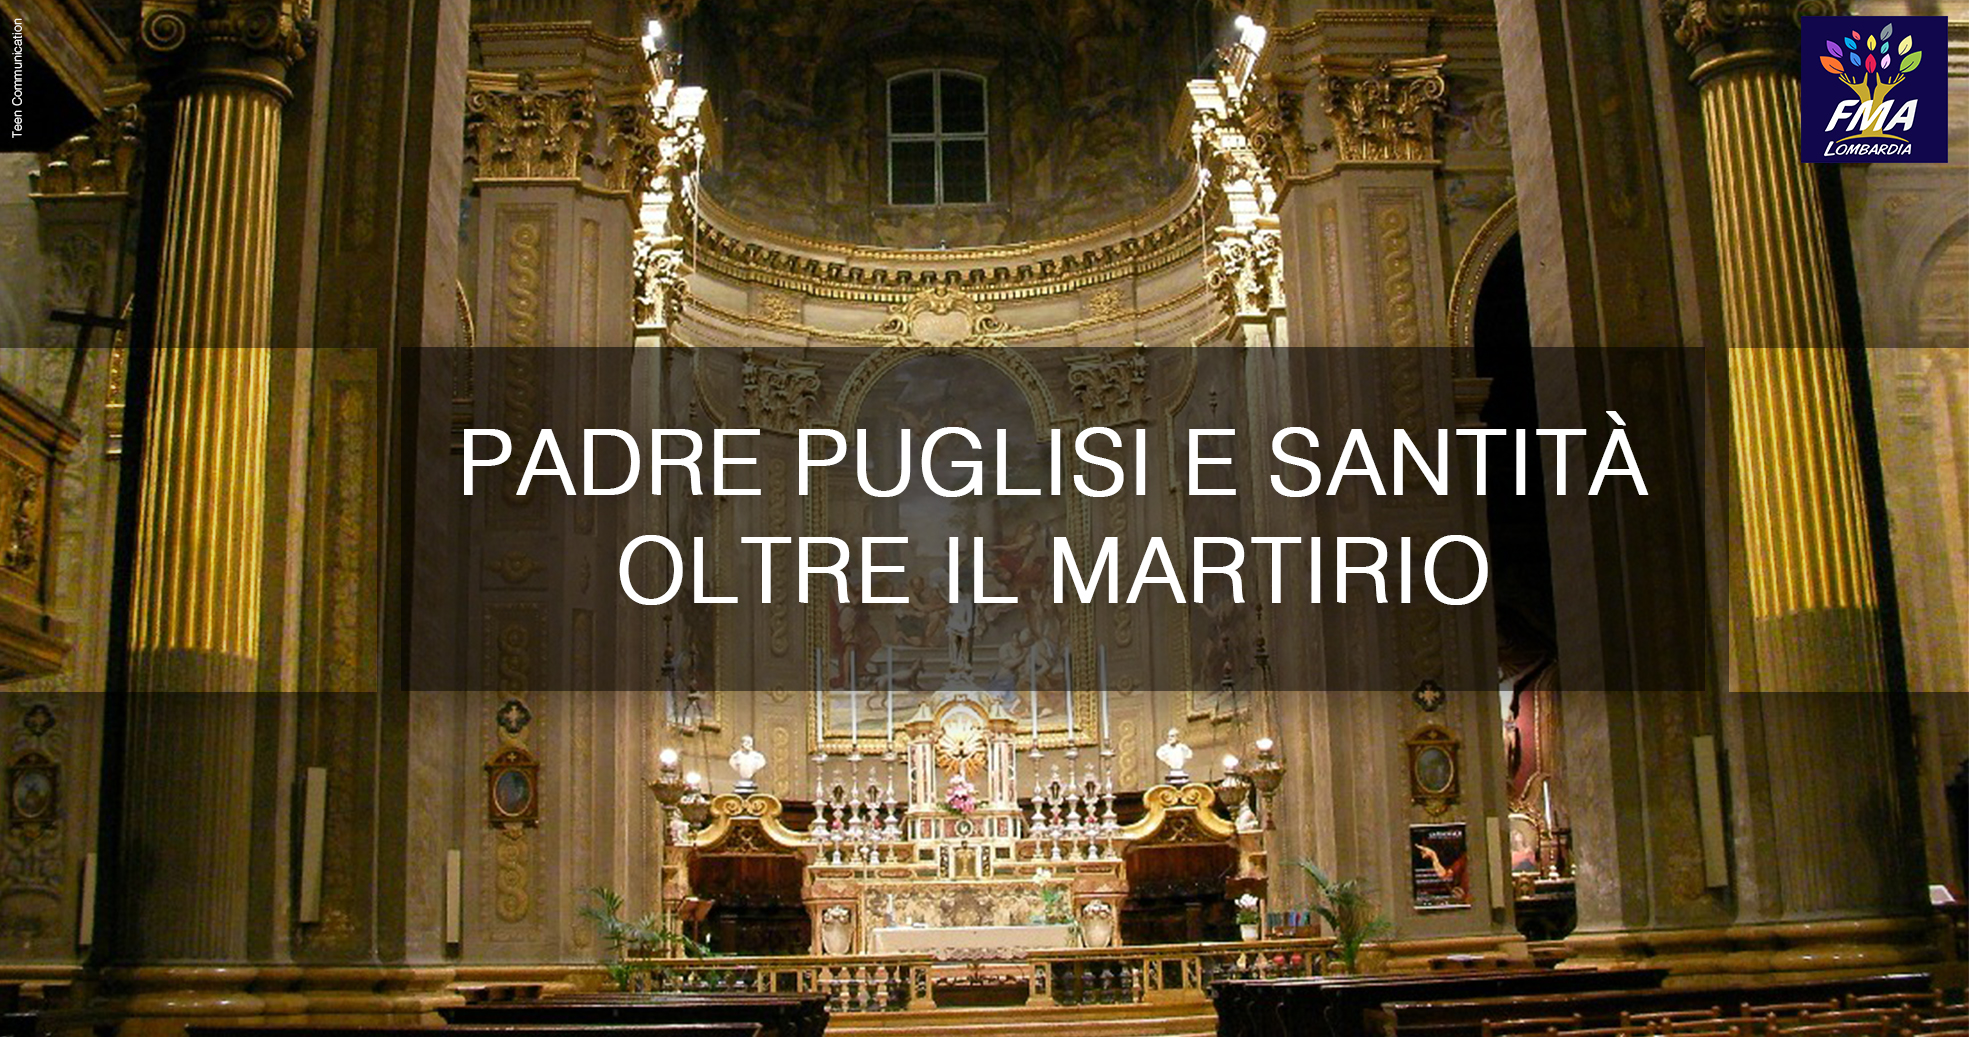 Padre Puglisi e santità oltre il martirio